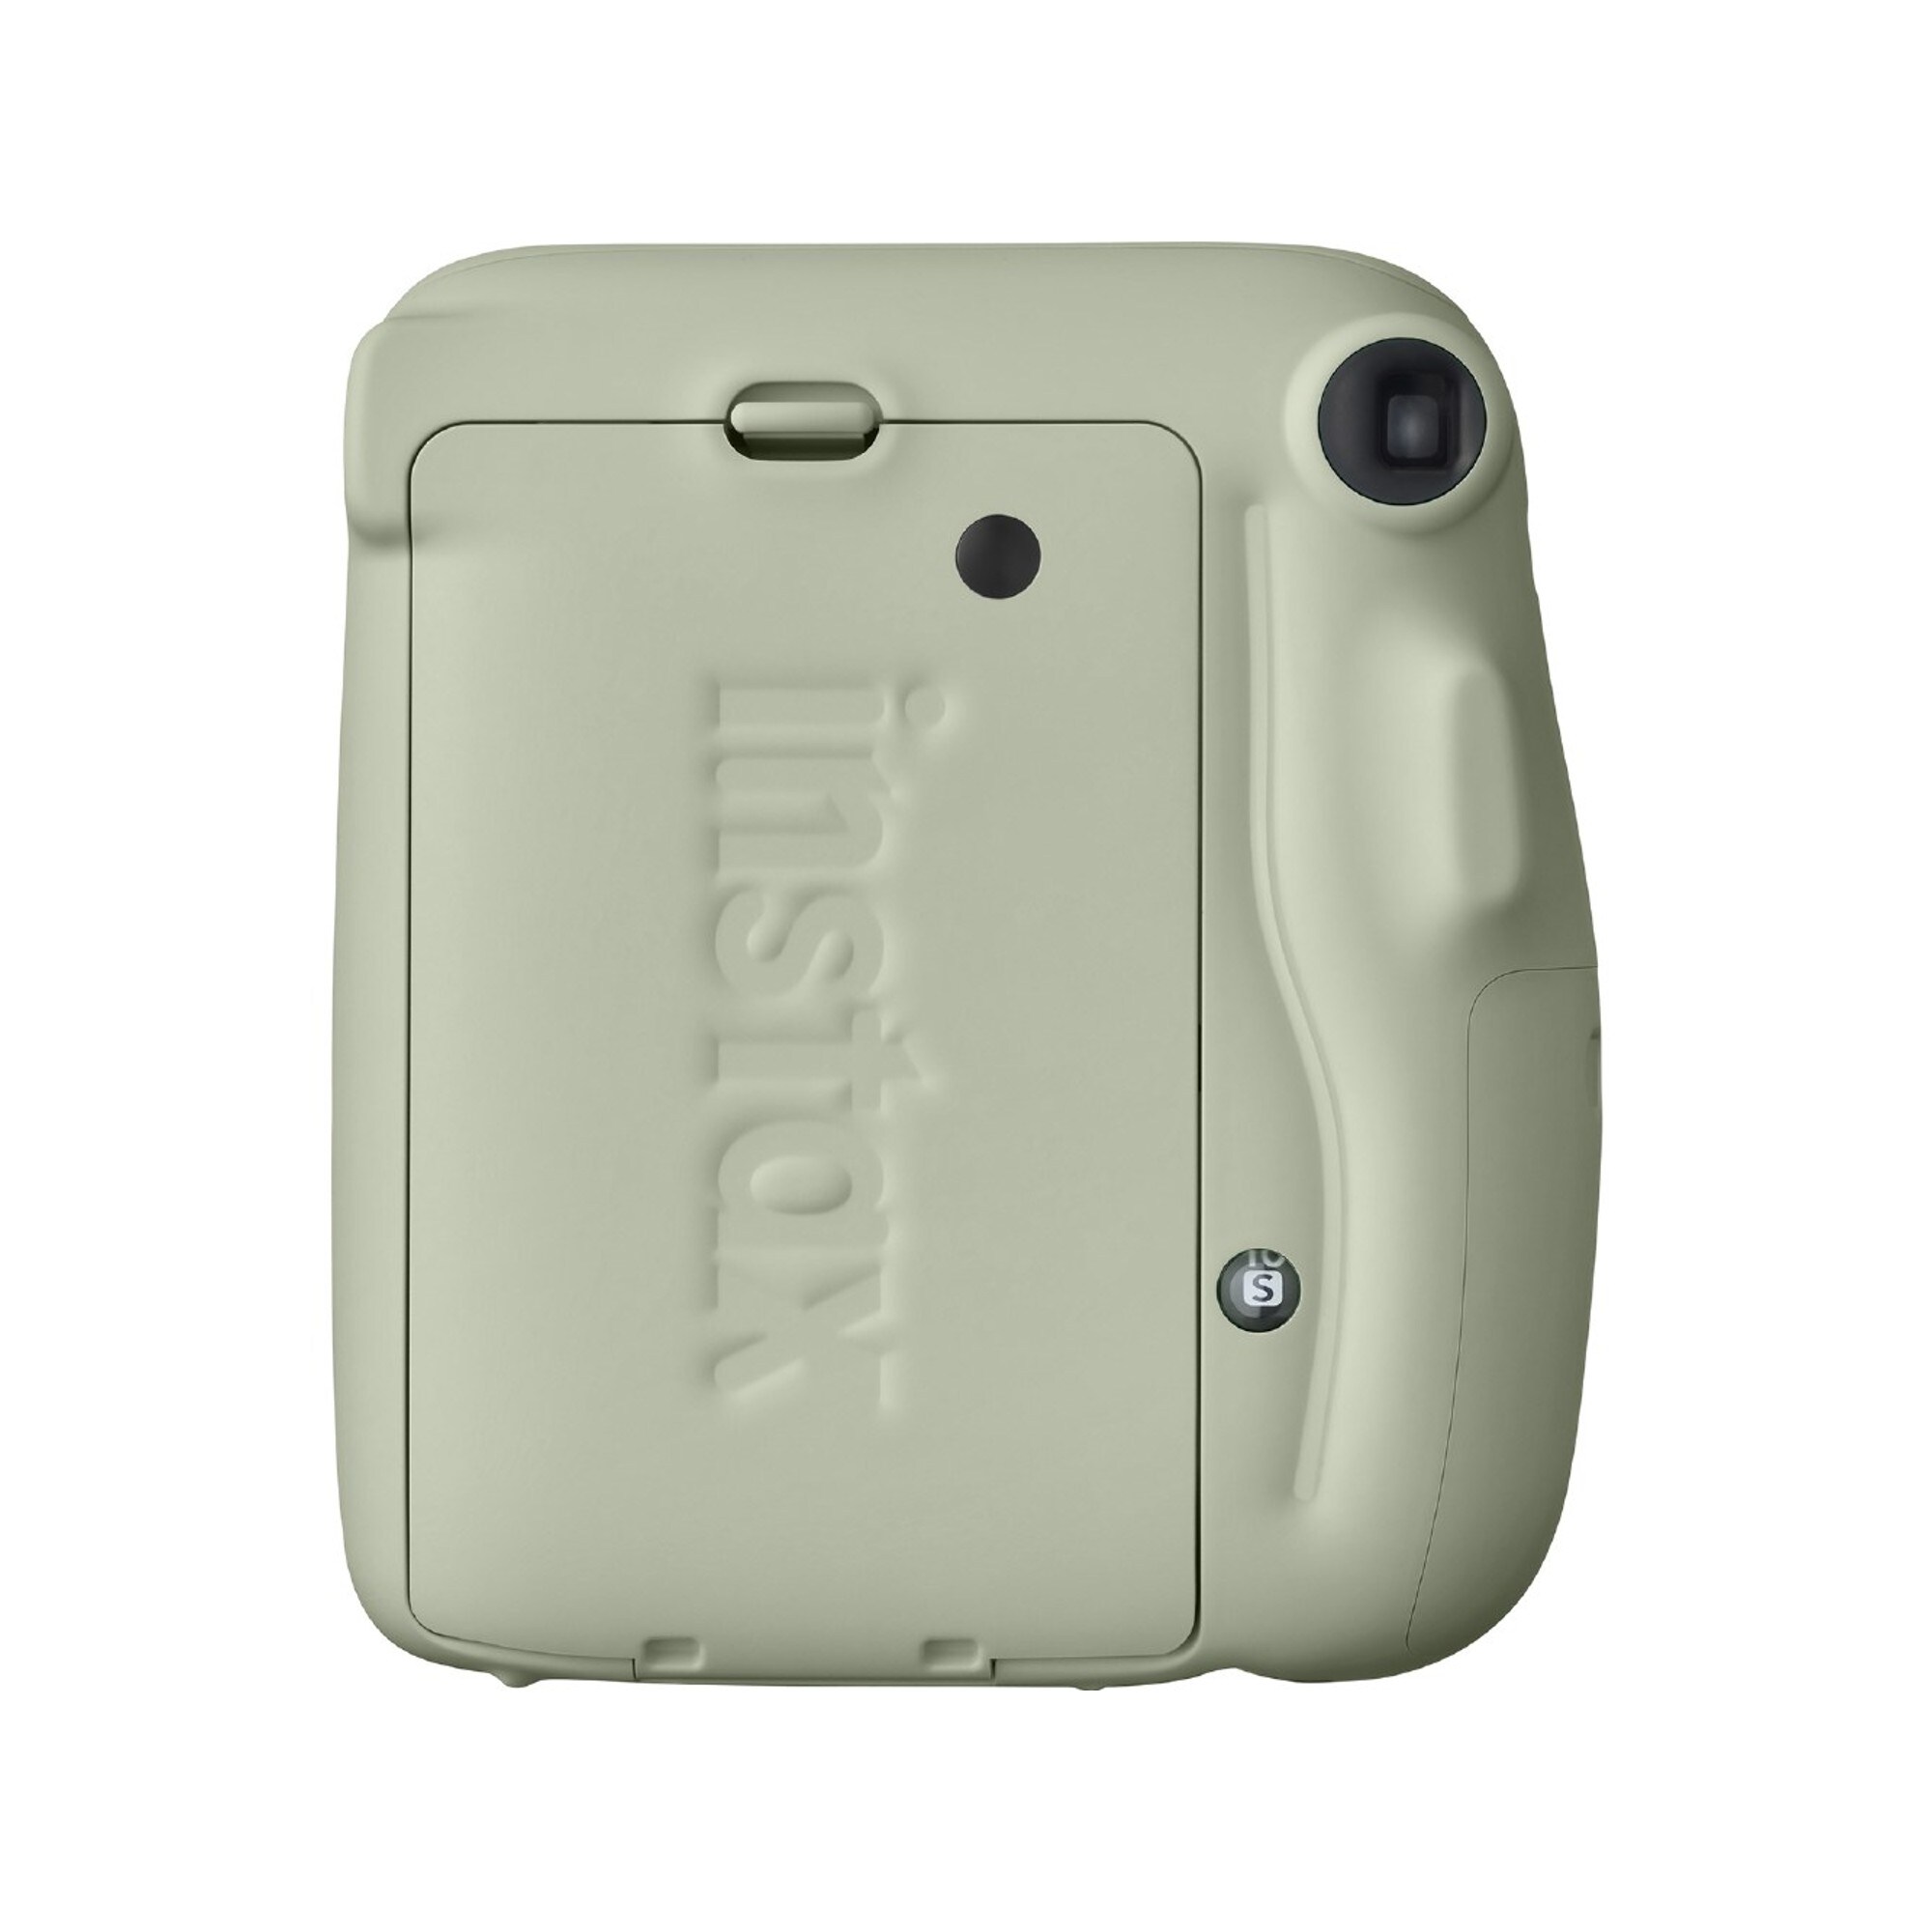 Fujifilm Instax Mini 11 Pastel-Green